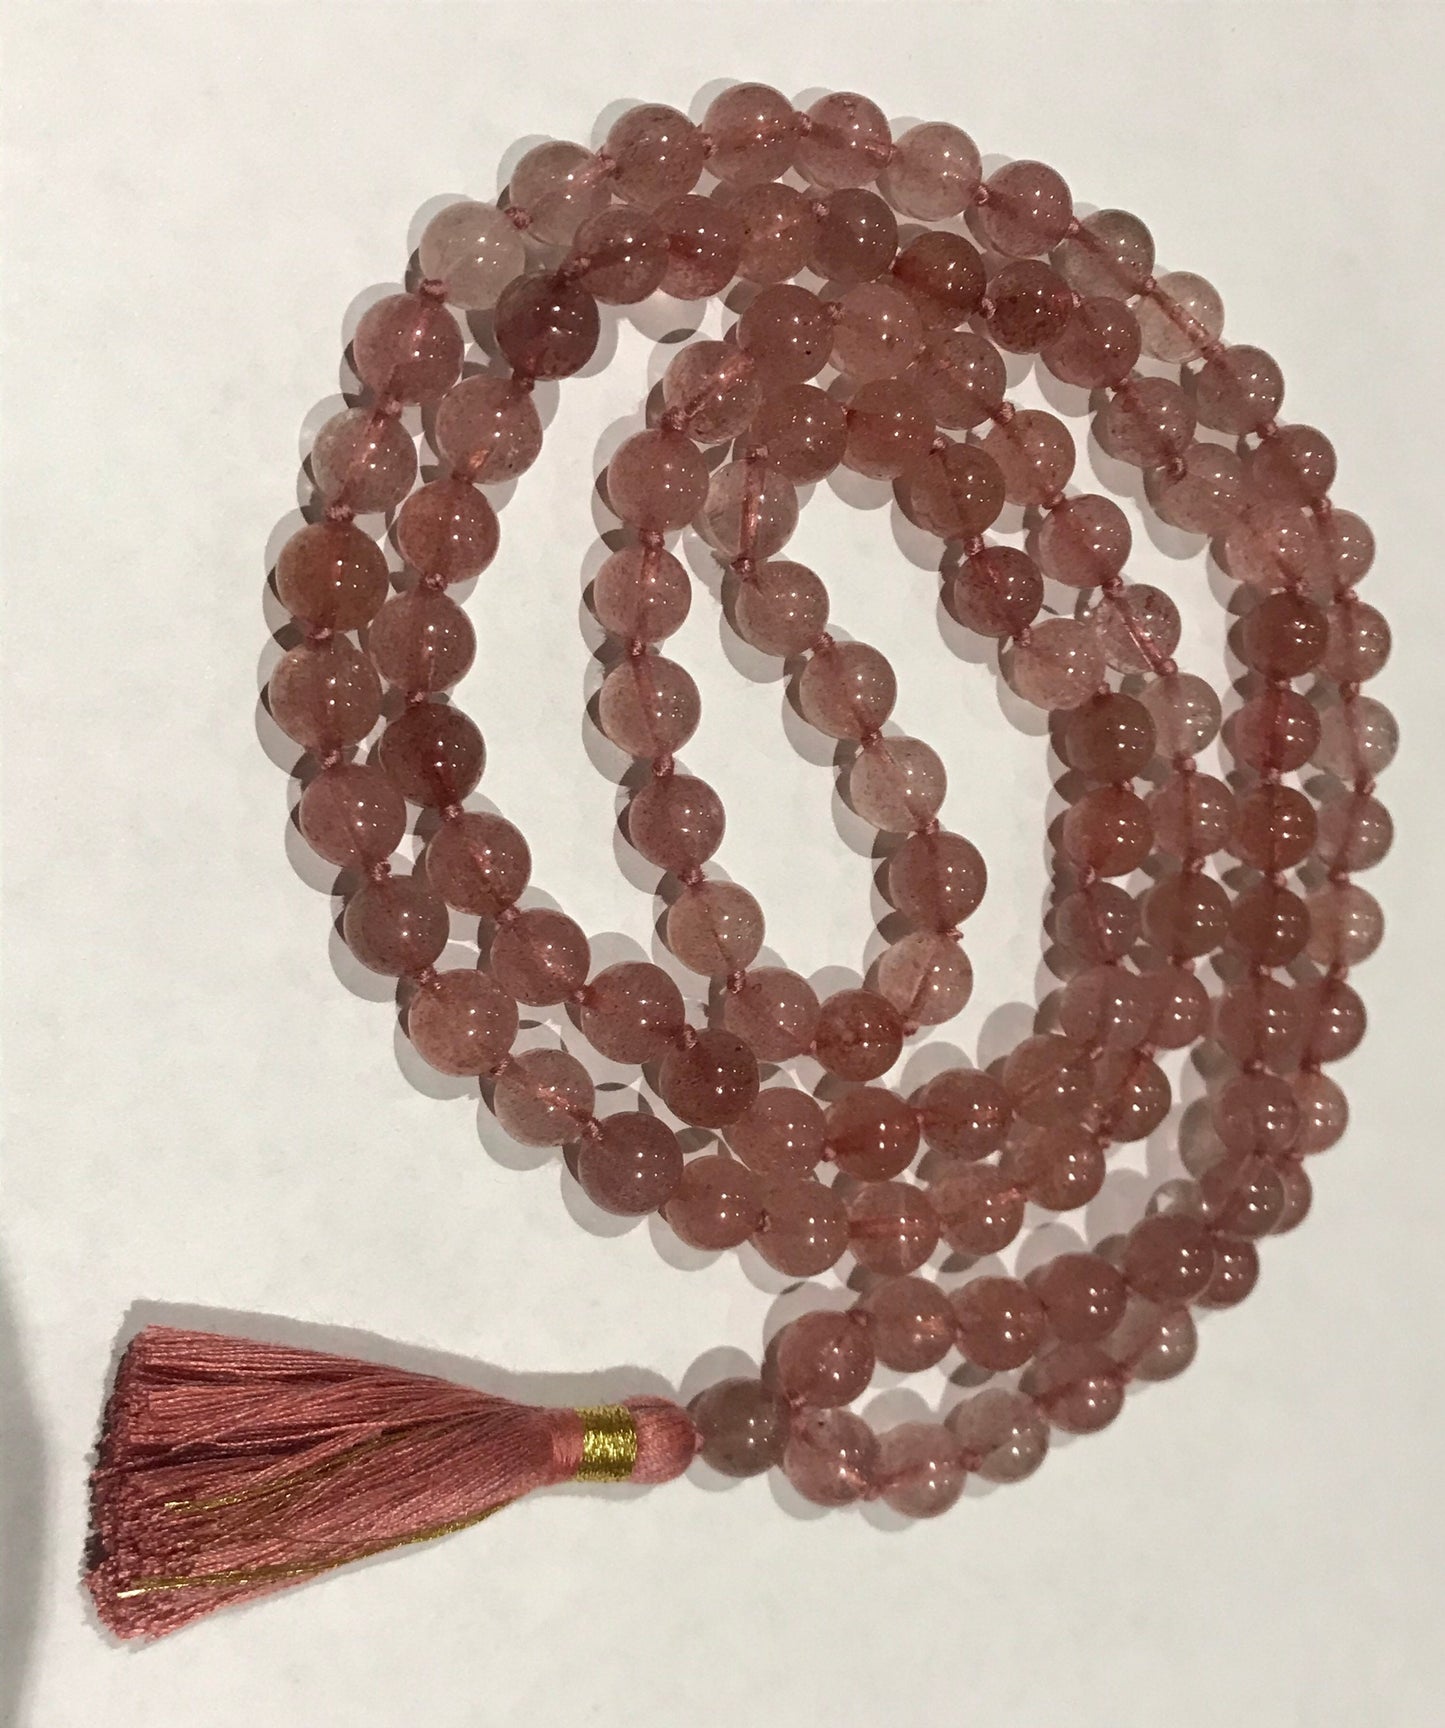 Pink Aventurine mala, 108 beads mala, 108 beads aventurine stone wrist mala yoga mala jewellery knotted, best quality beads beautiful mala